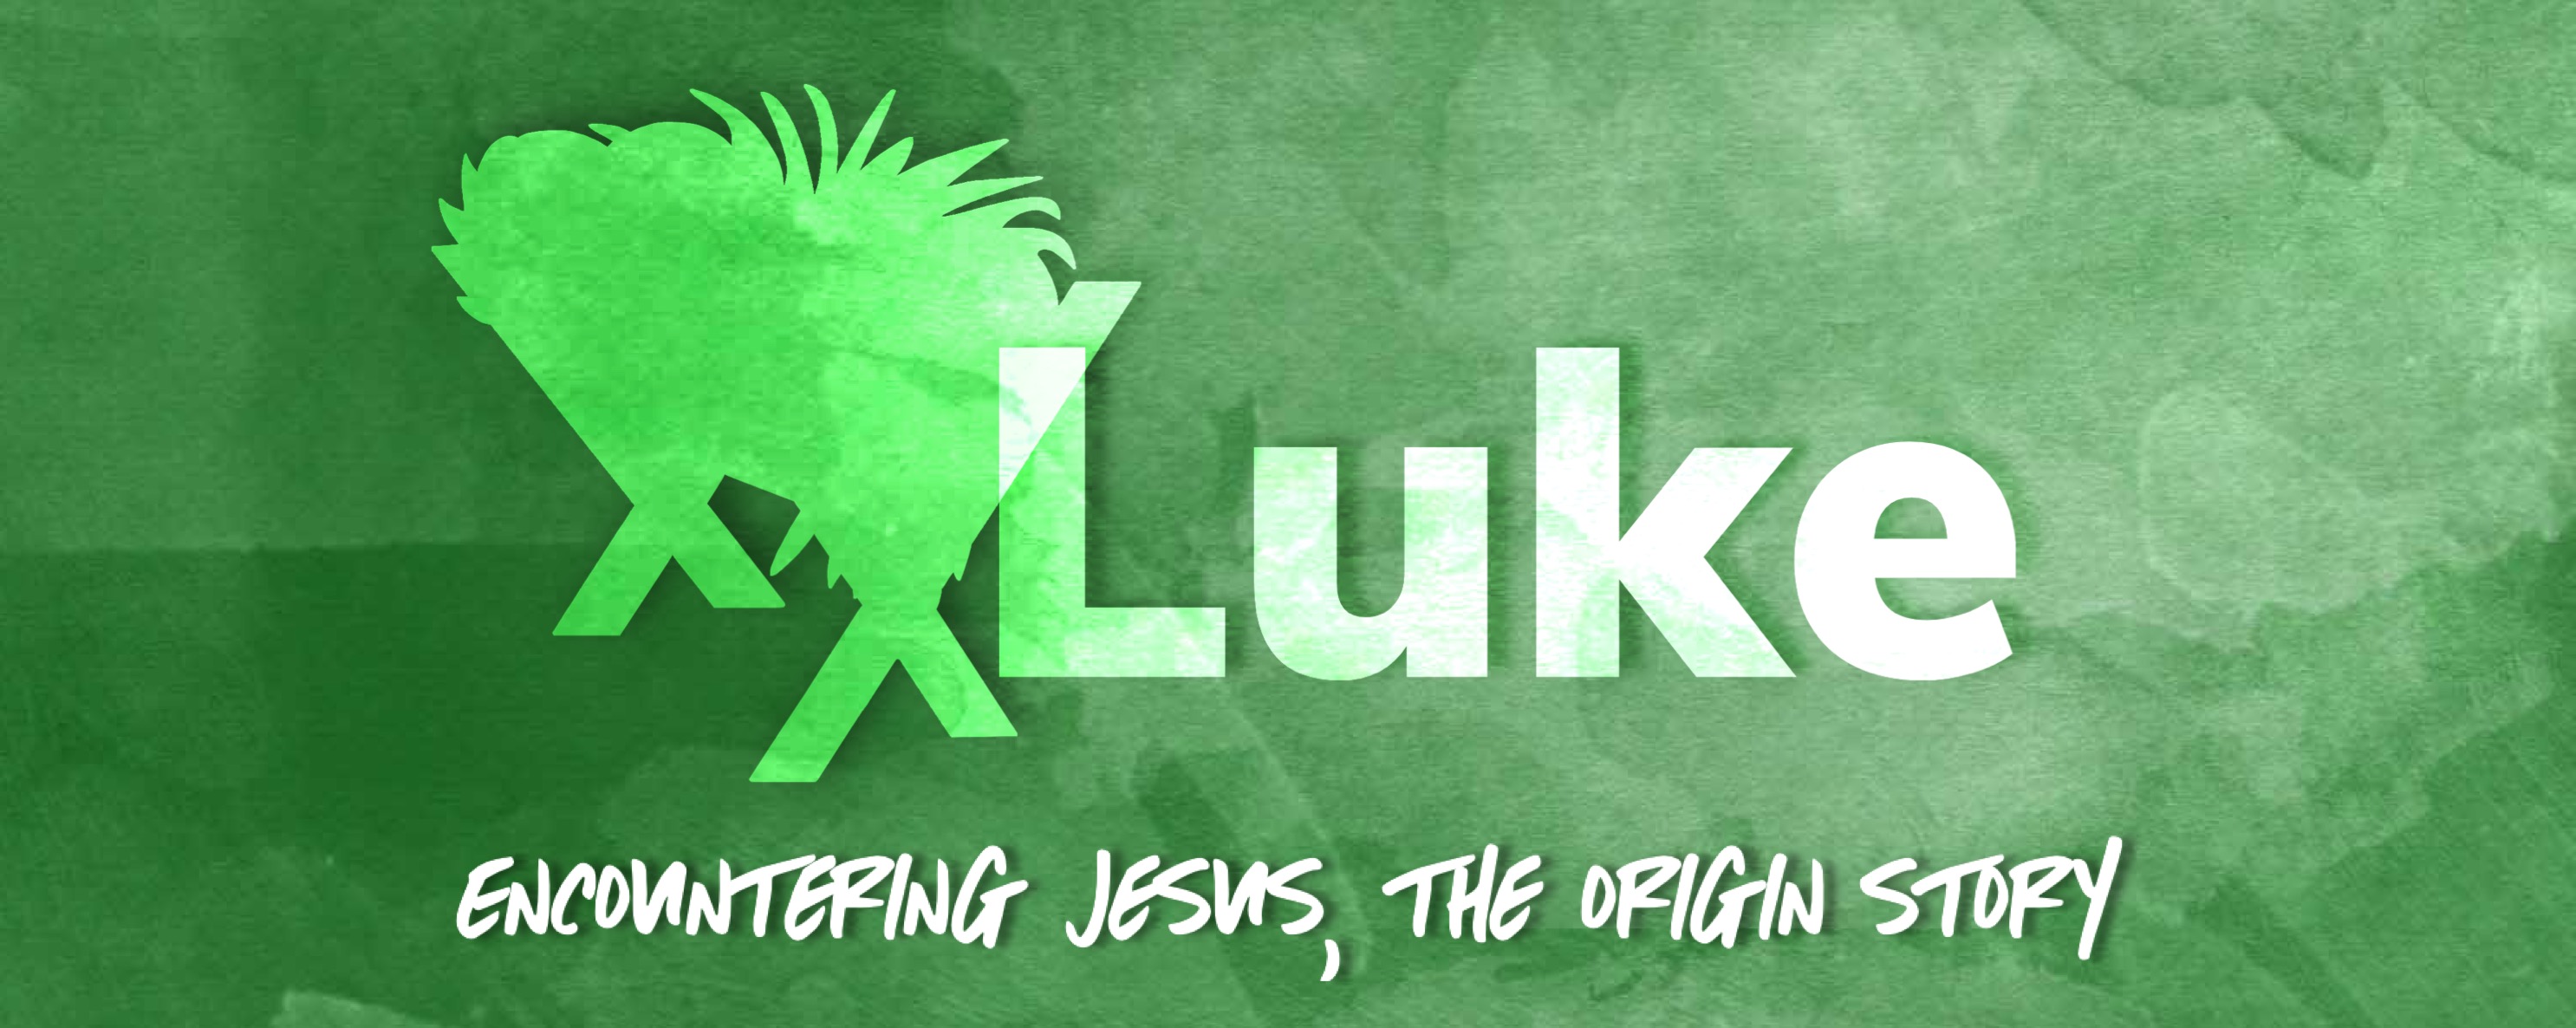 Luke: Encountering Jesus, The Origin Story banner